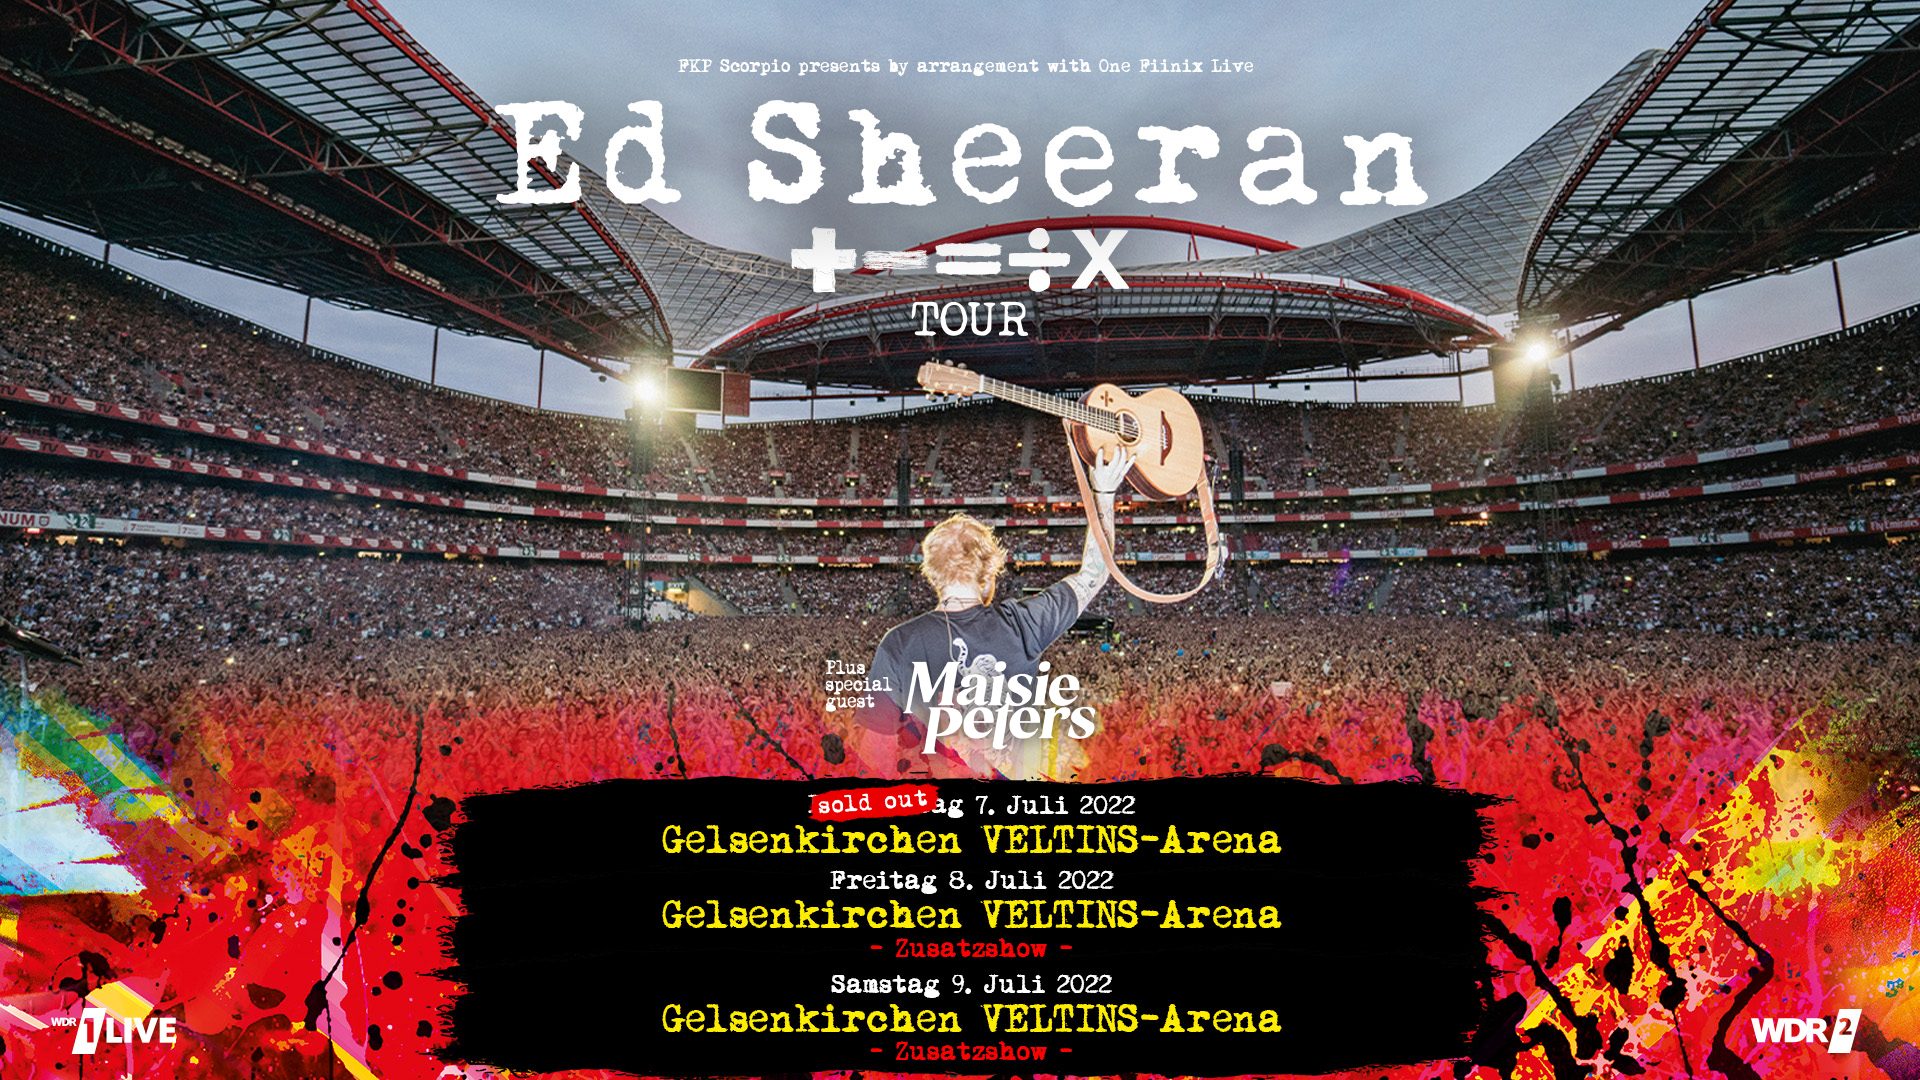 Ed Sheeran +-/u003d÷x Tour Zusatzshow 08.07.22